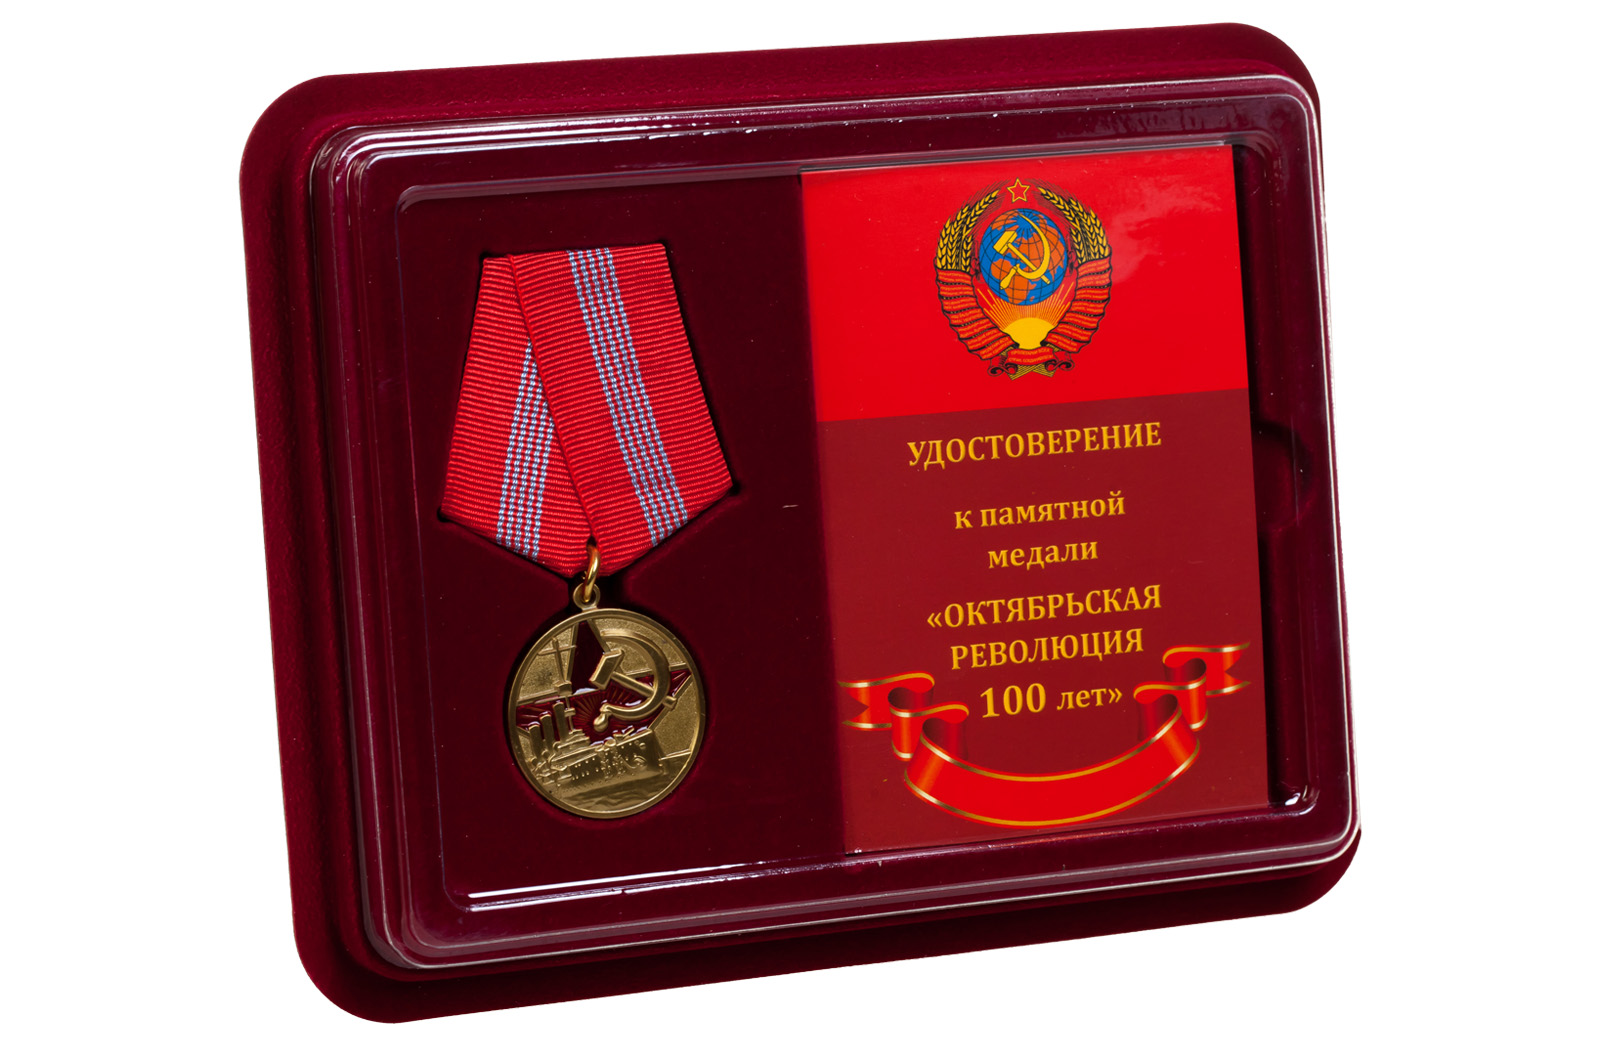 Купить юбилейную медаль 100 лет Великой Октябрьской Революции с доставкой